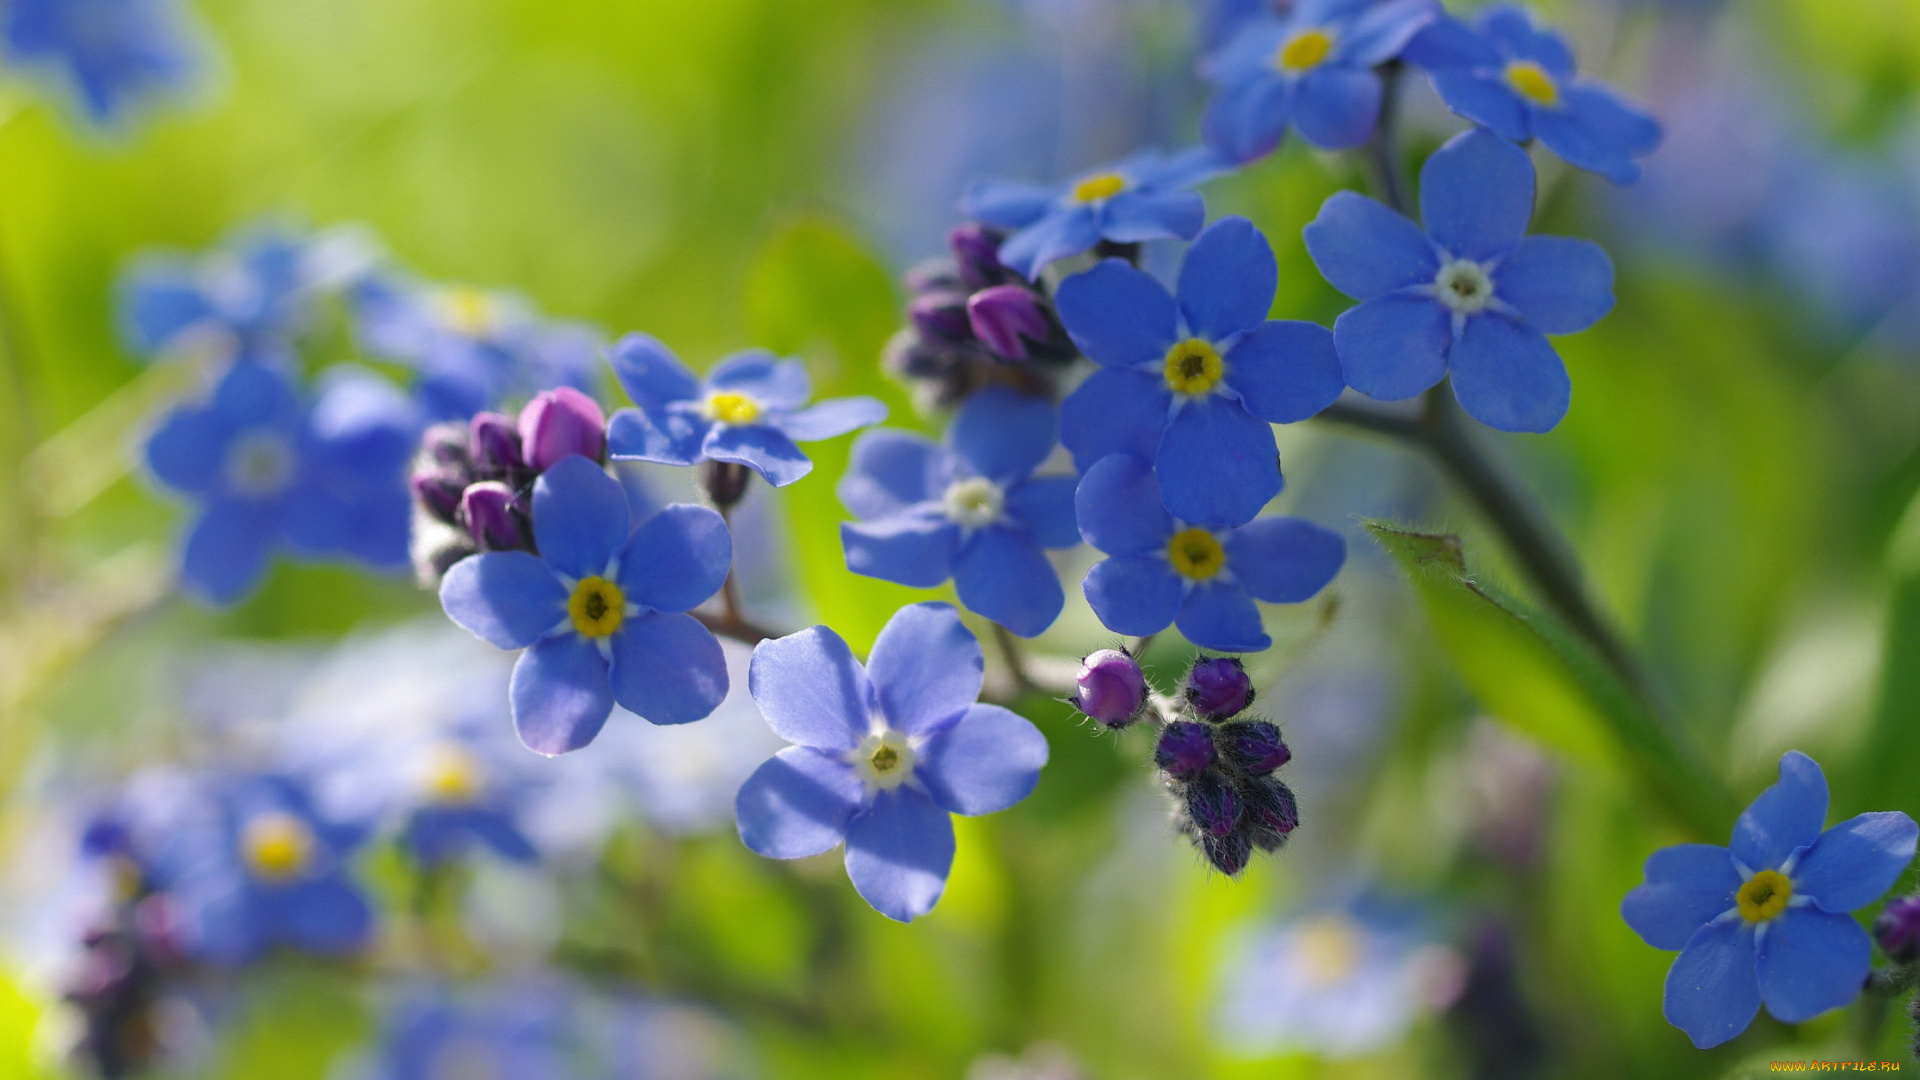 цветы, незабудки, первоцветы, нежность, радость, дача, май, макро, природа, флора, голубой, цвет, весна, красота